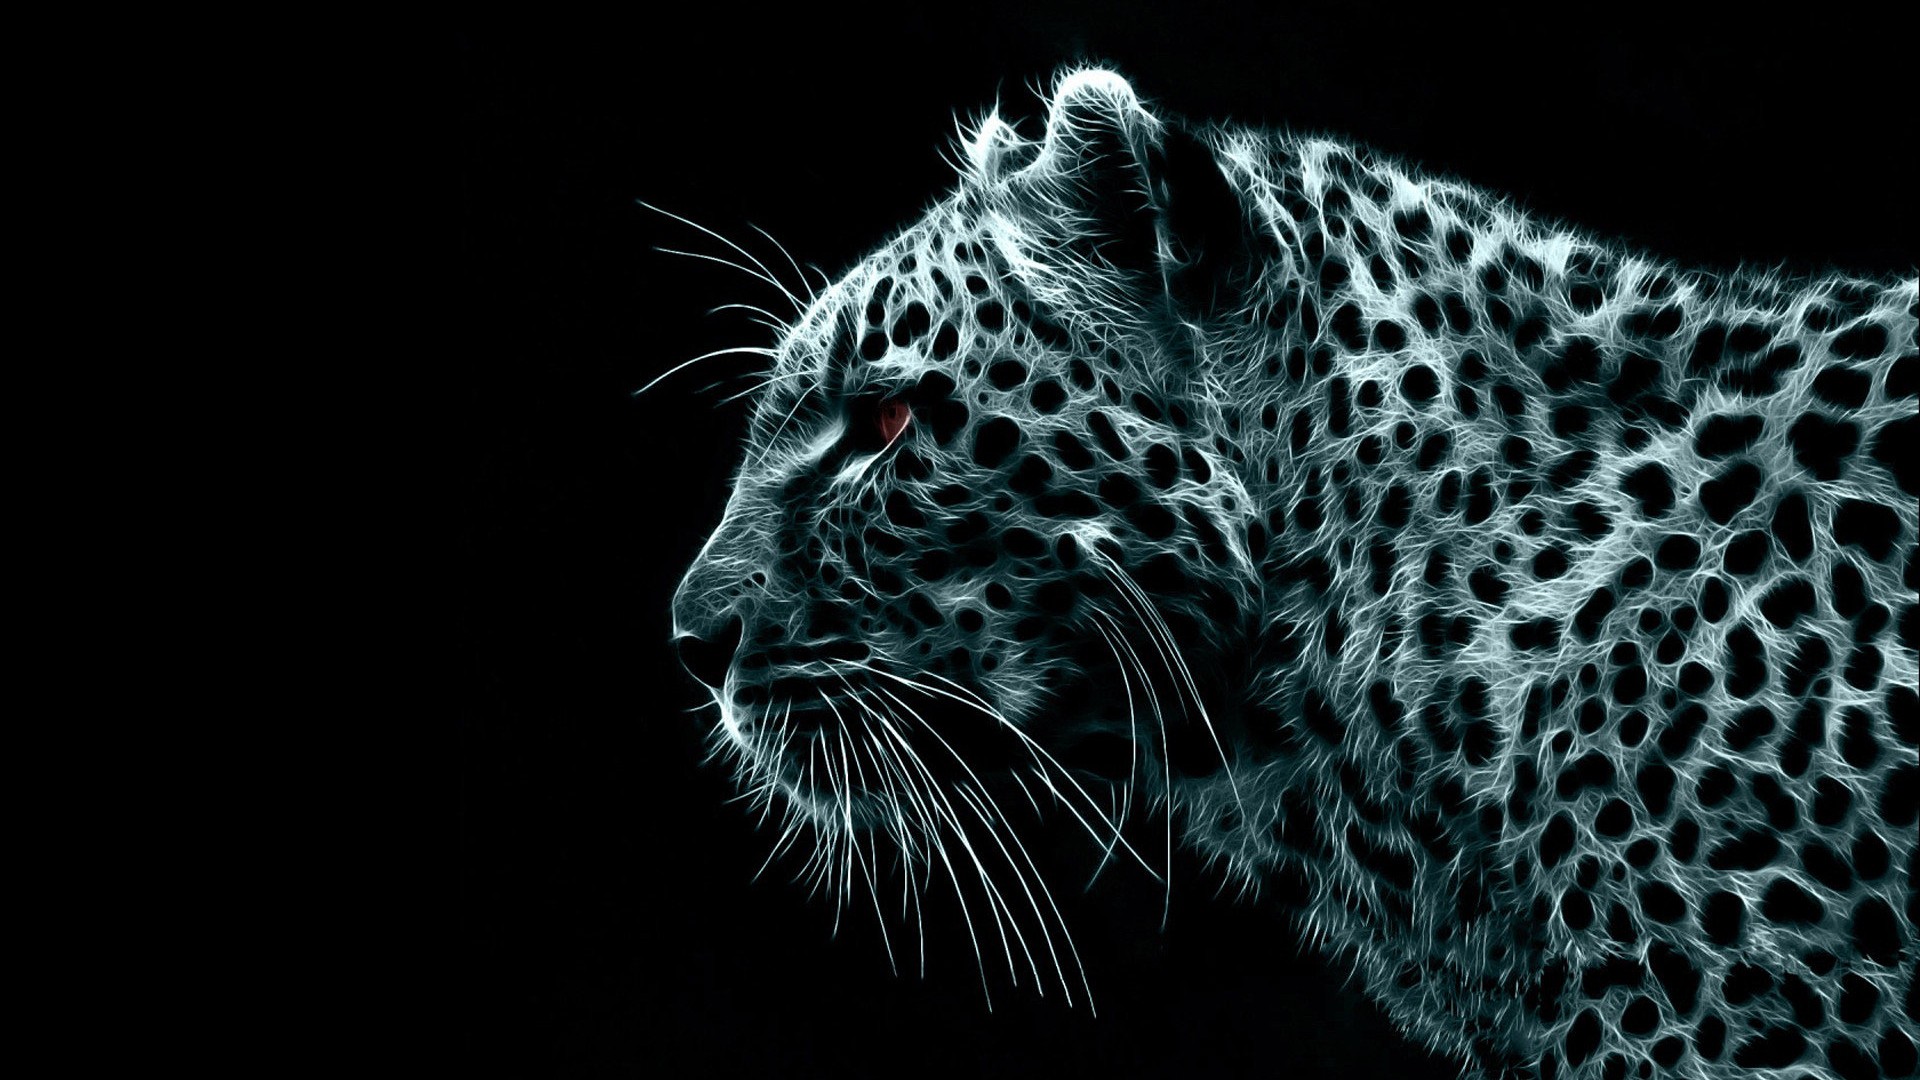 Wallpaper Leopard Desktop High Quality